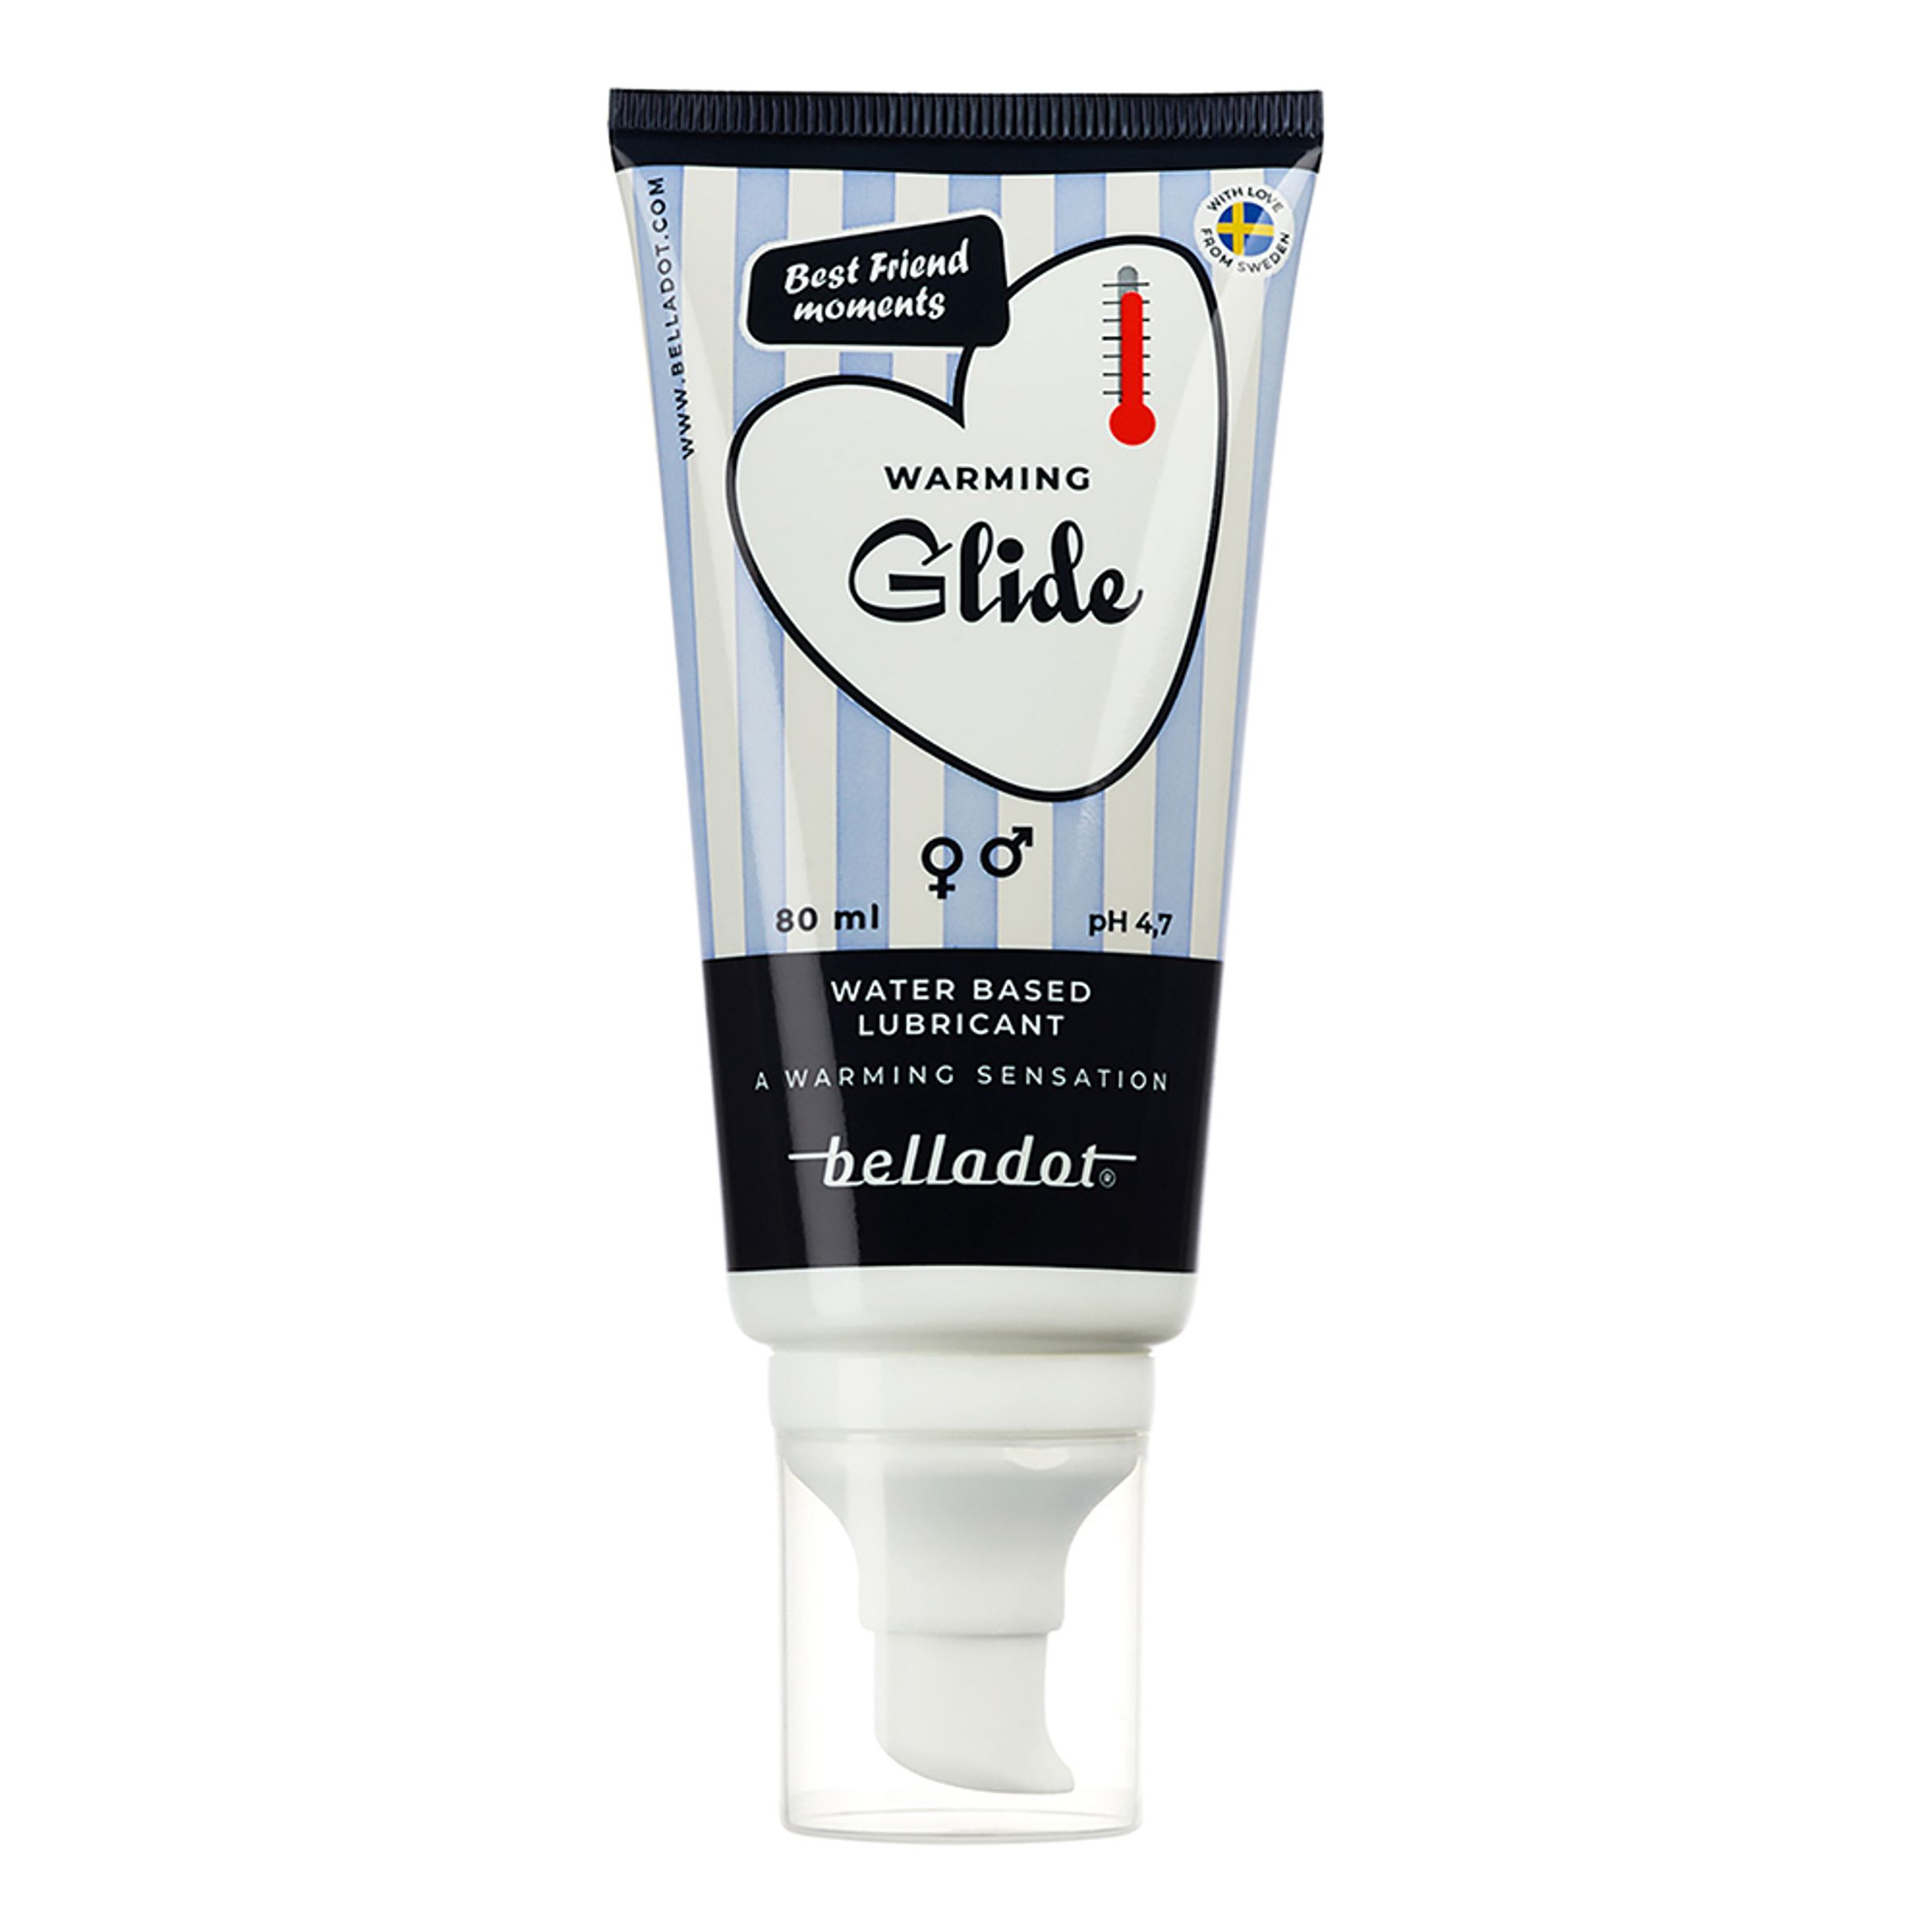 Belladot Lubricant Warming Glidmedel - 80 ml